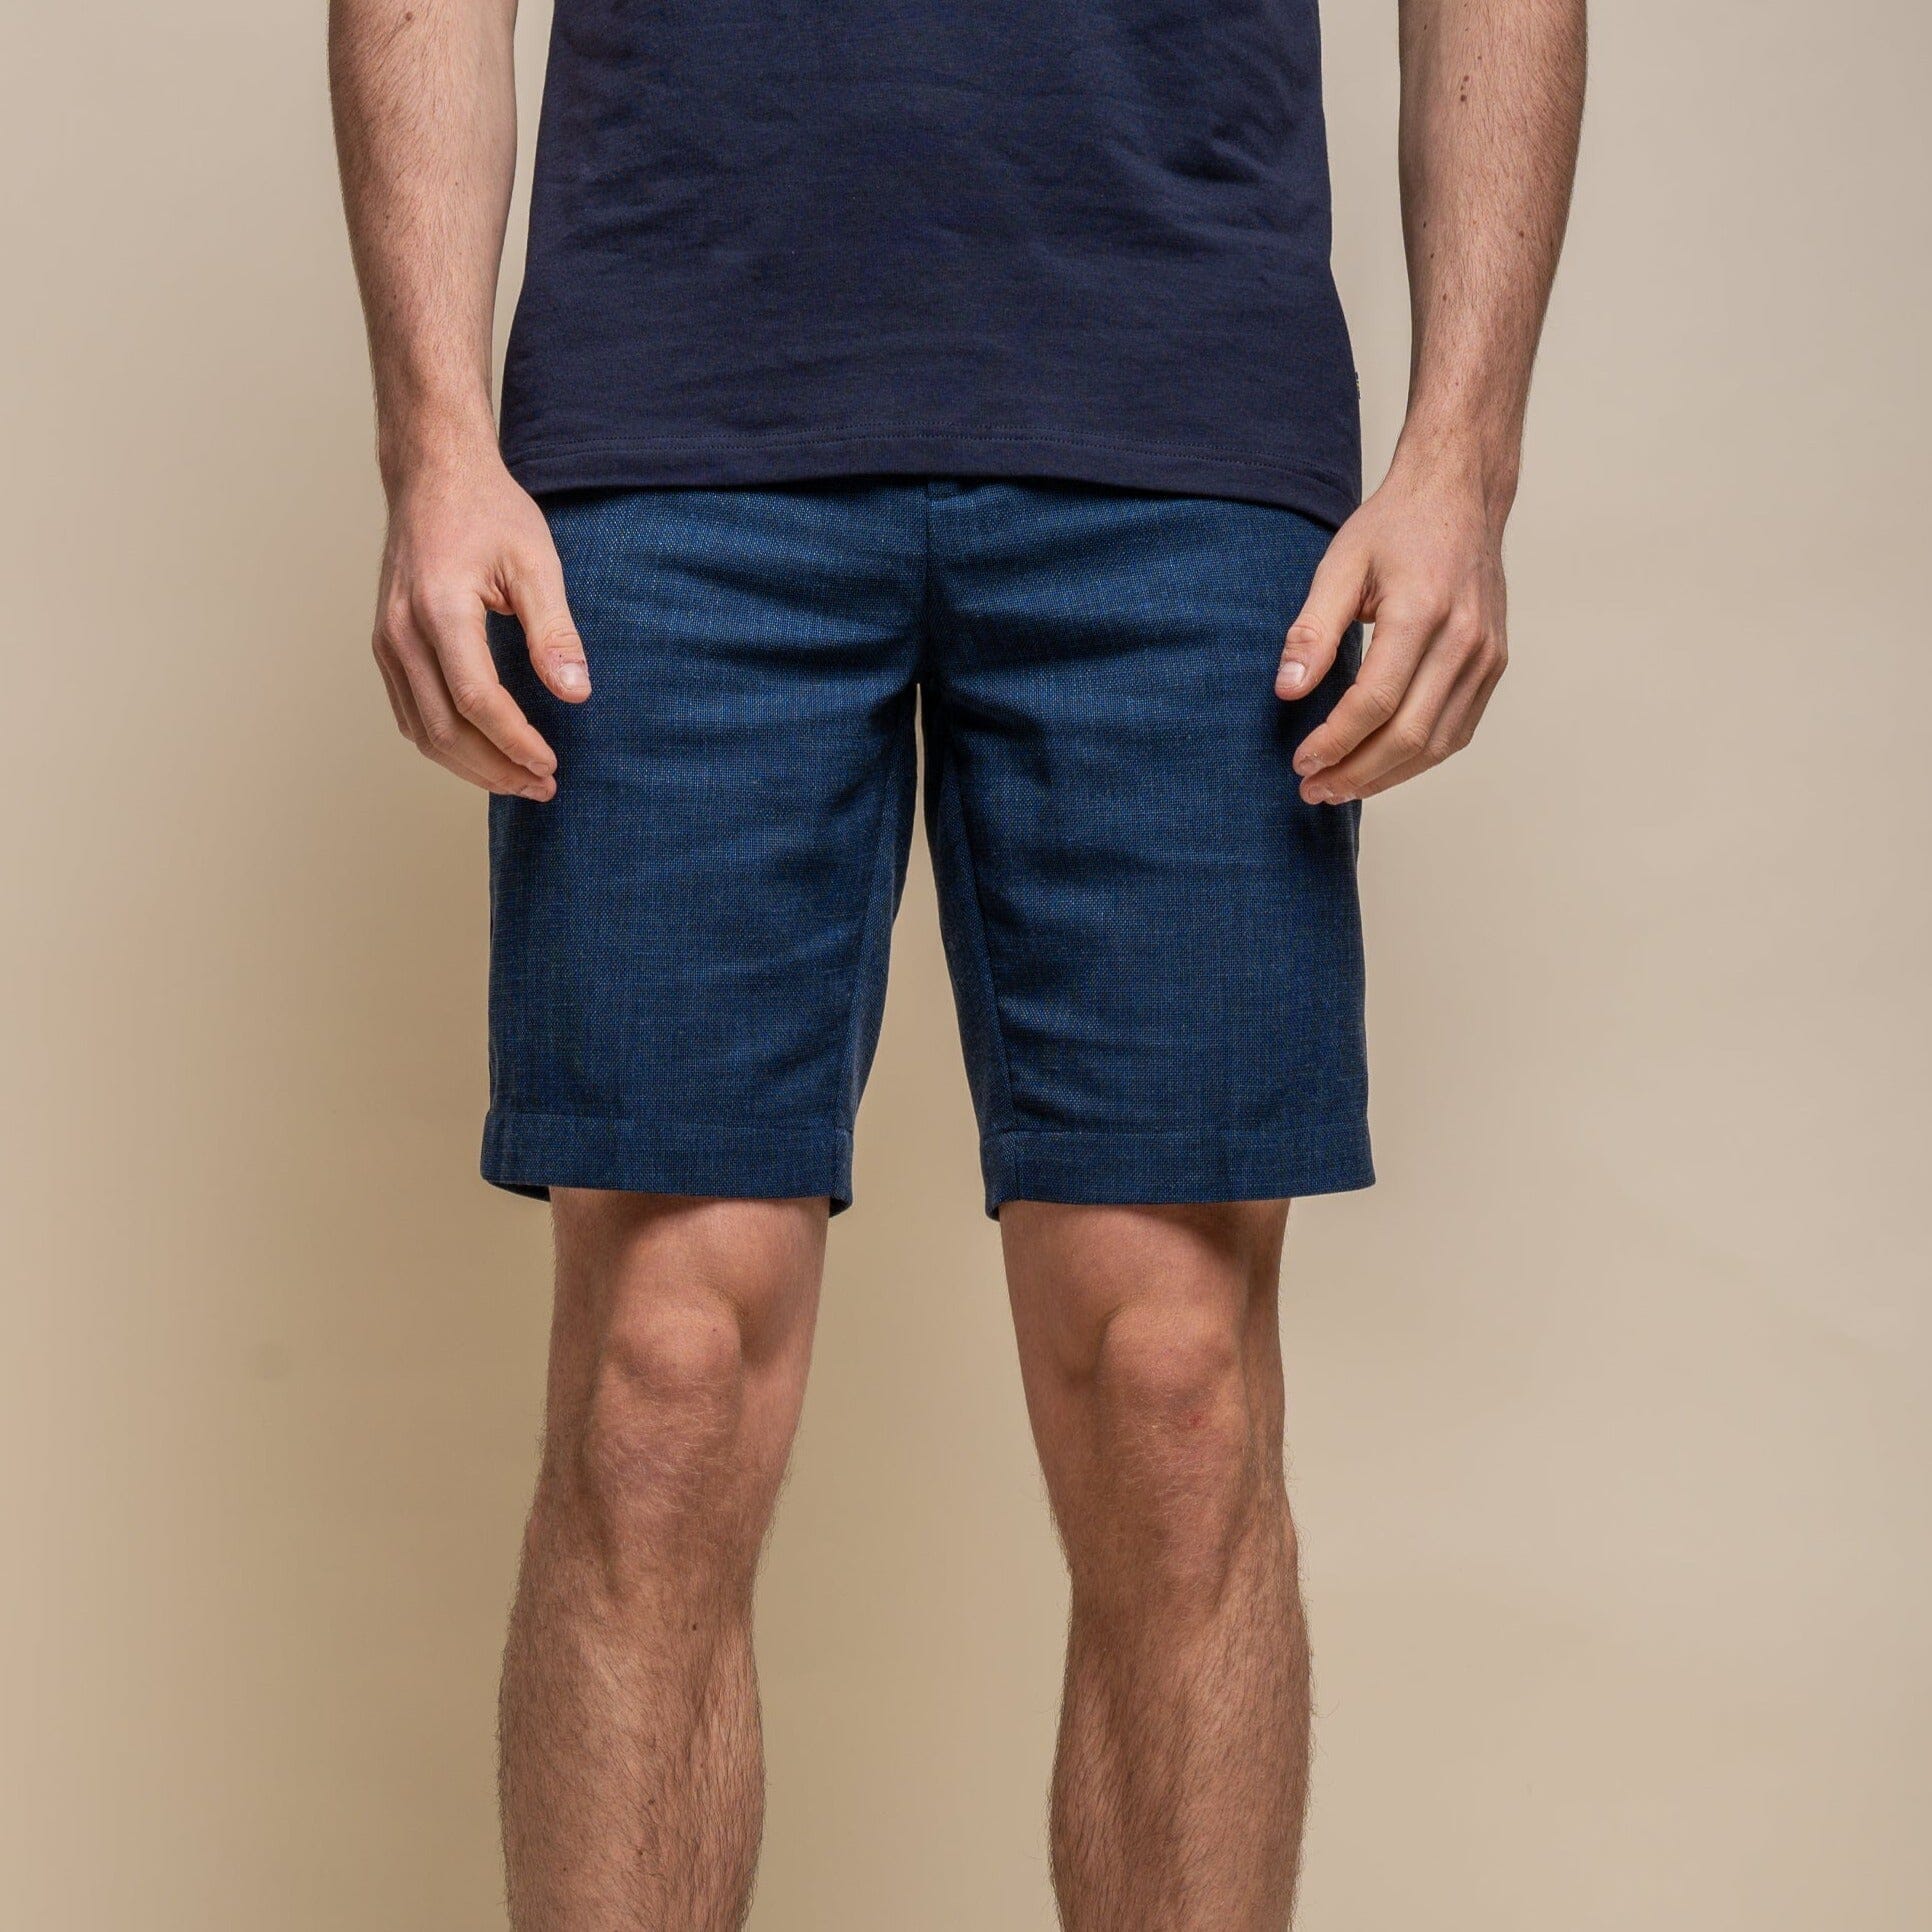 Blue Linen Shorts - STOCK CLEARANCE - Shorts - - THREADPEPPER